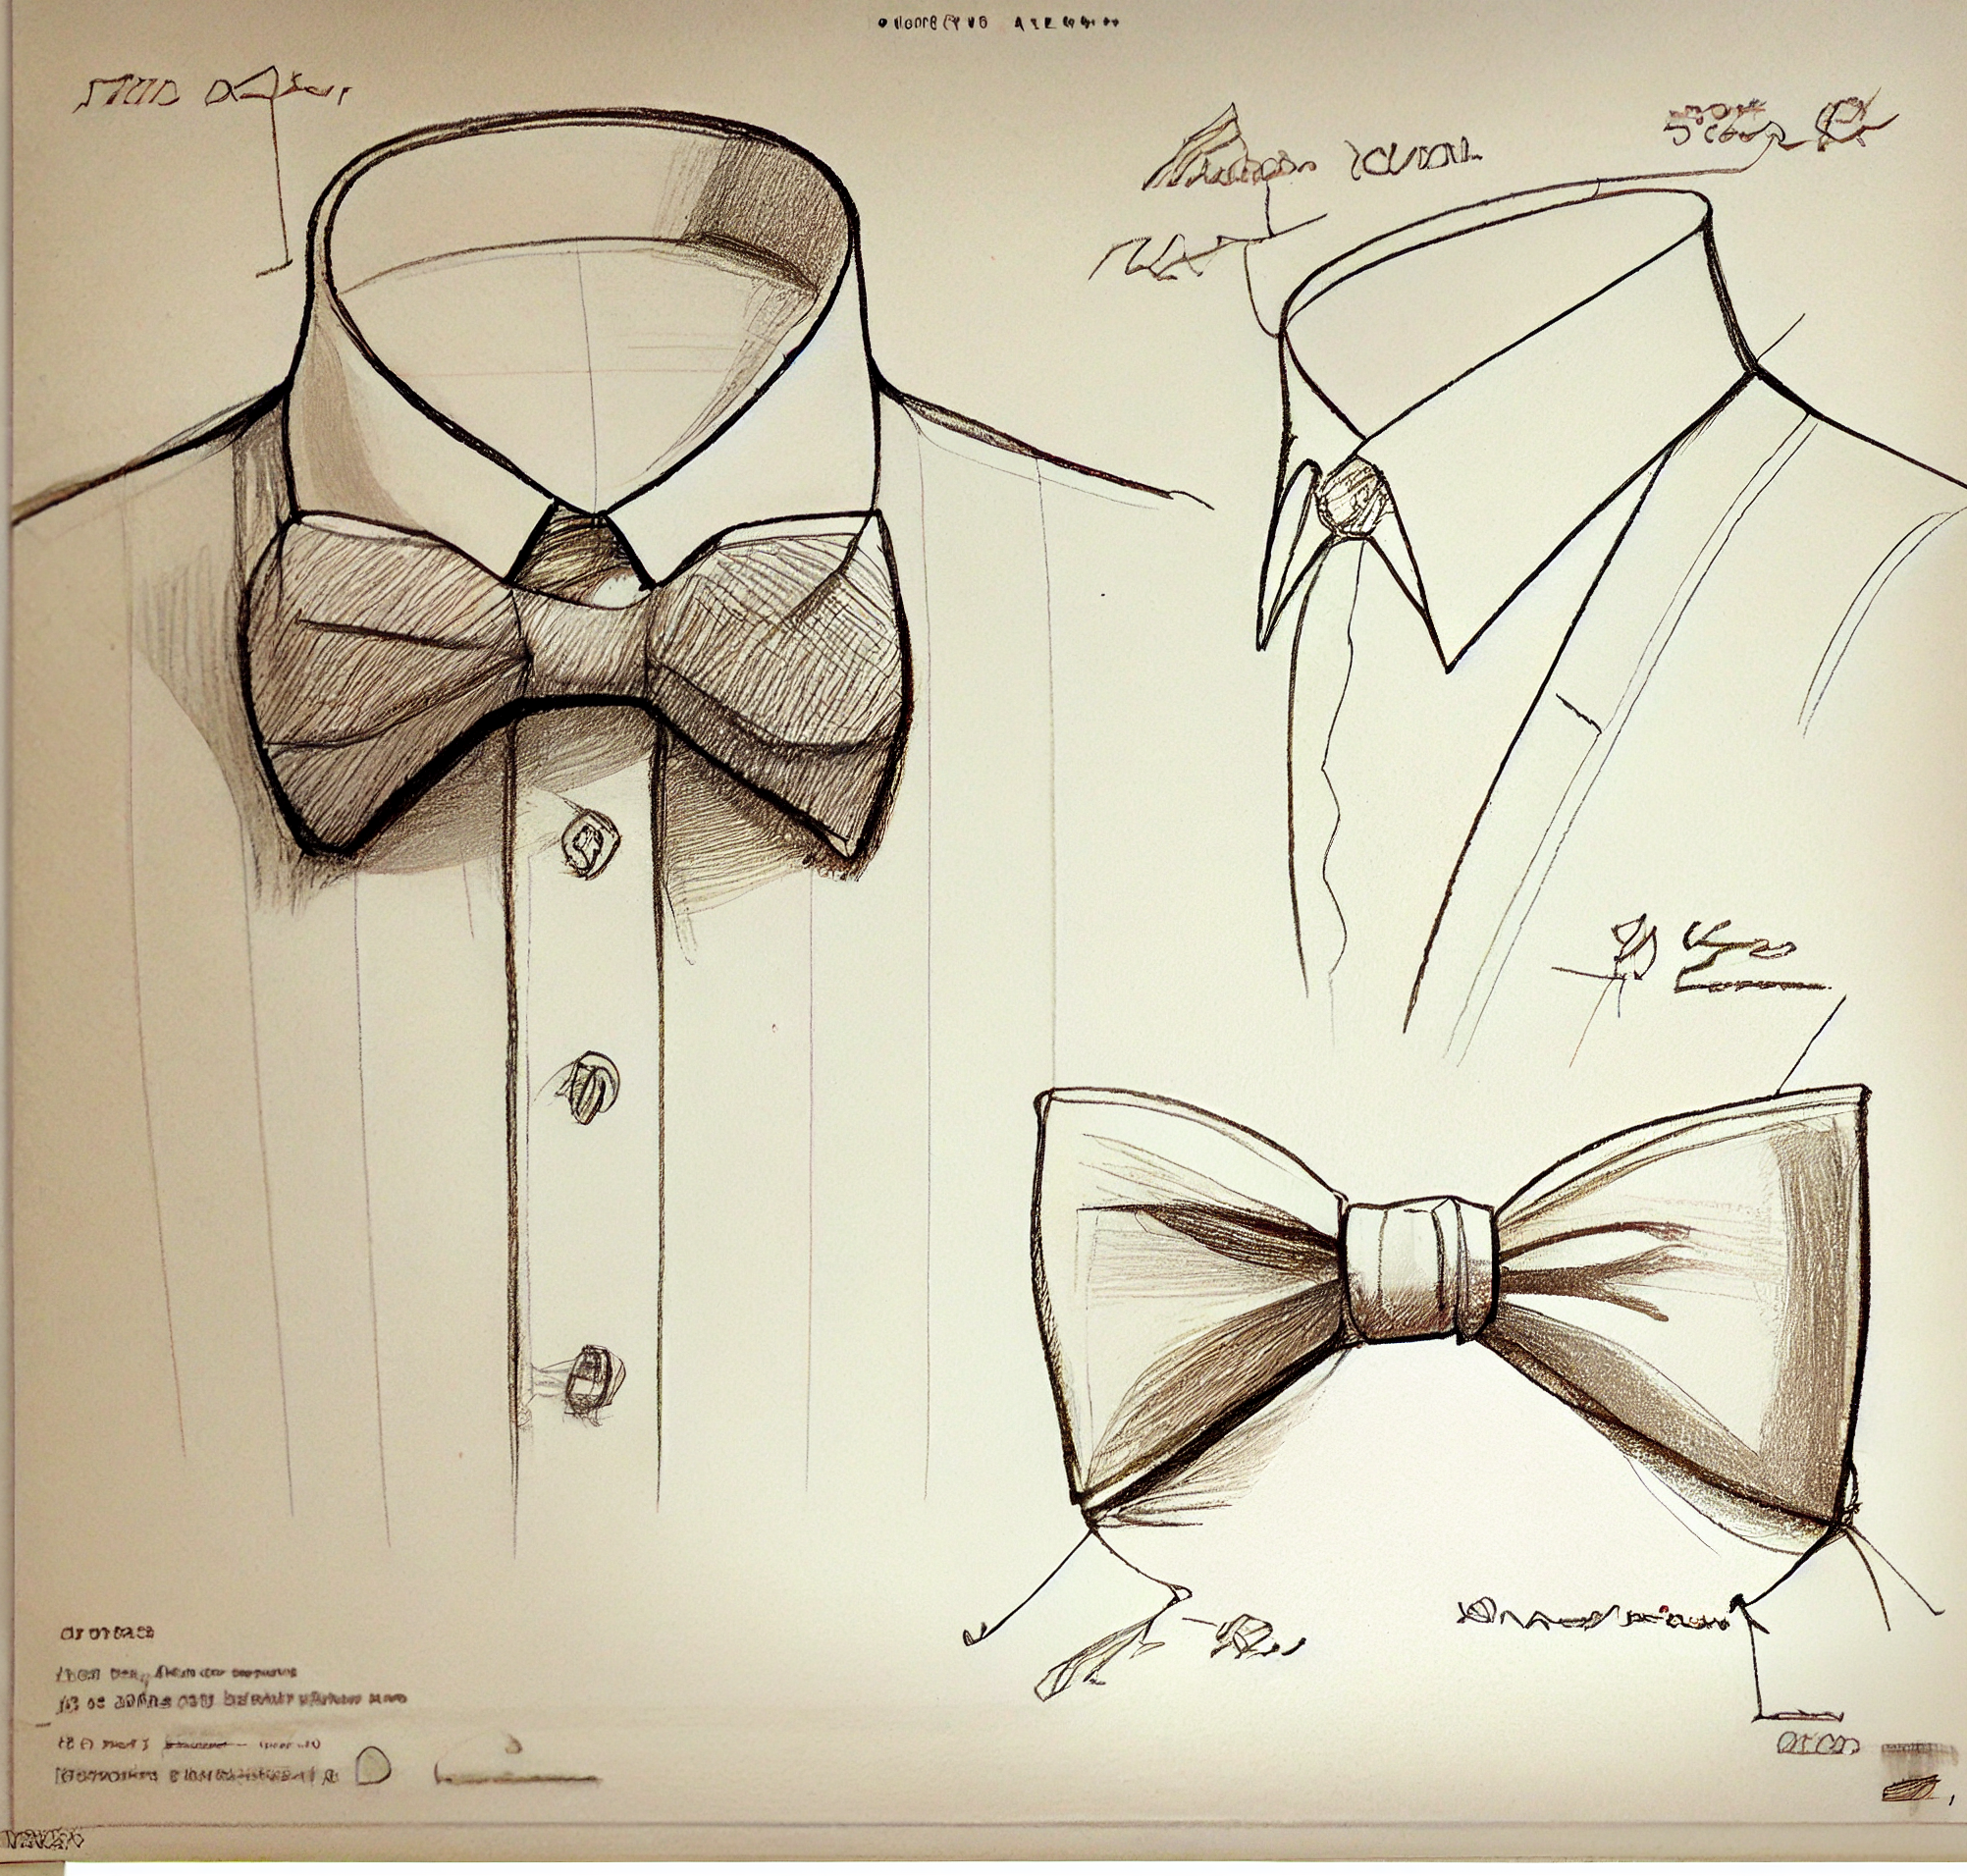 Cravattino per uomo, dal disegno al pezzo finito, Cravatta farfalla per uomo